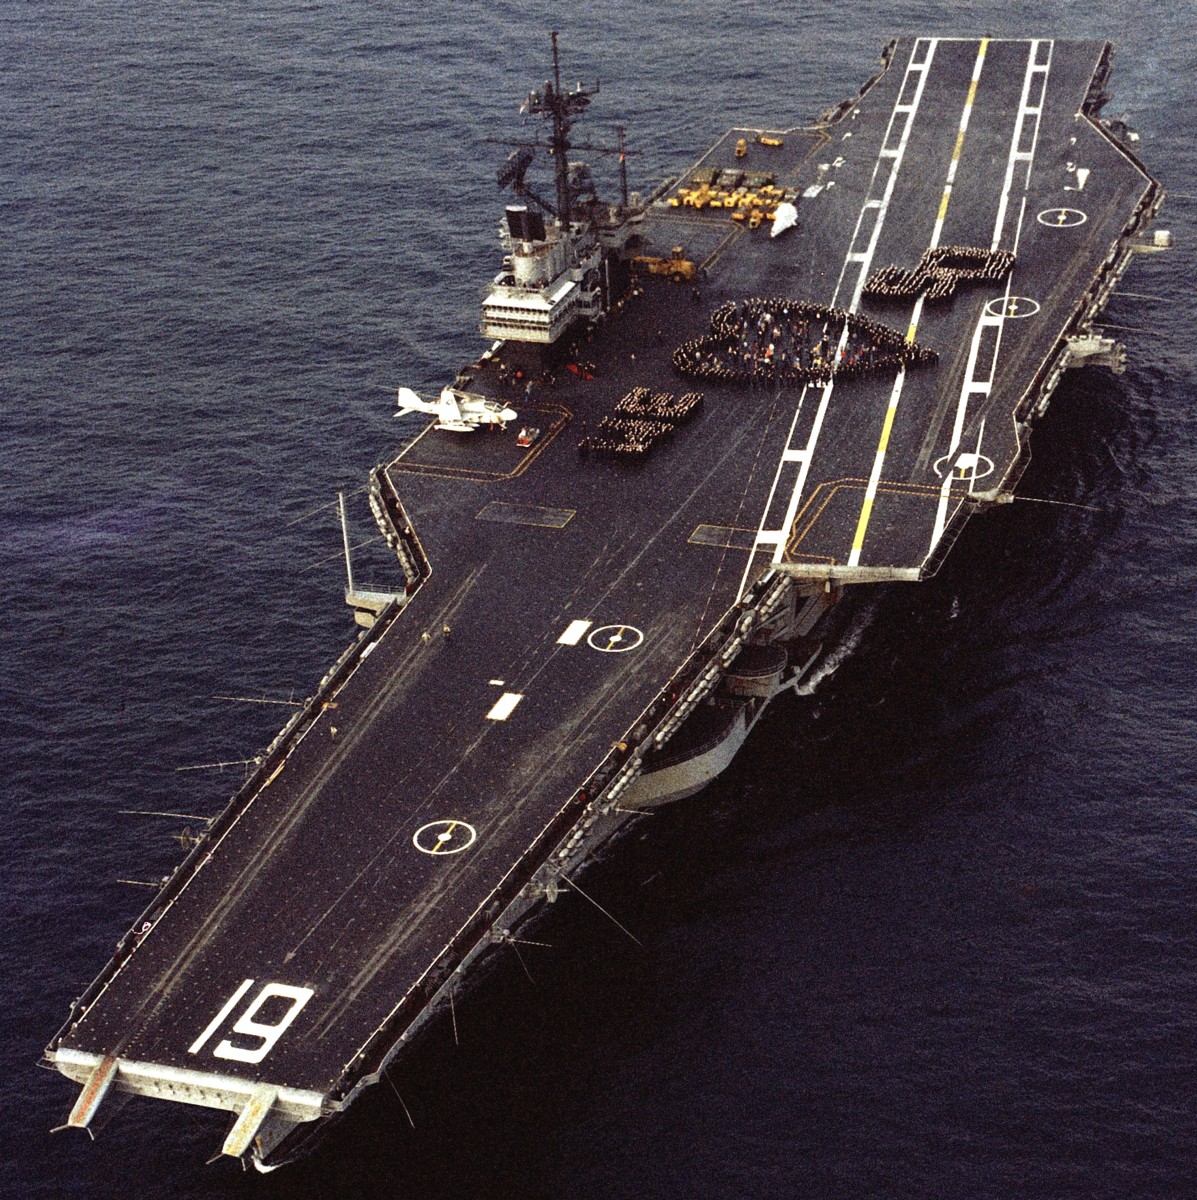 cv-61 uss ranger forrestal class aircraft carrier us navy san diego california 53